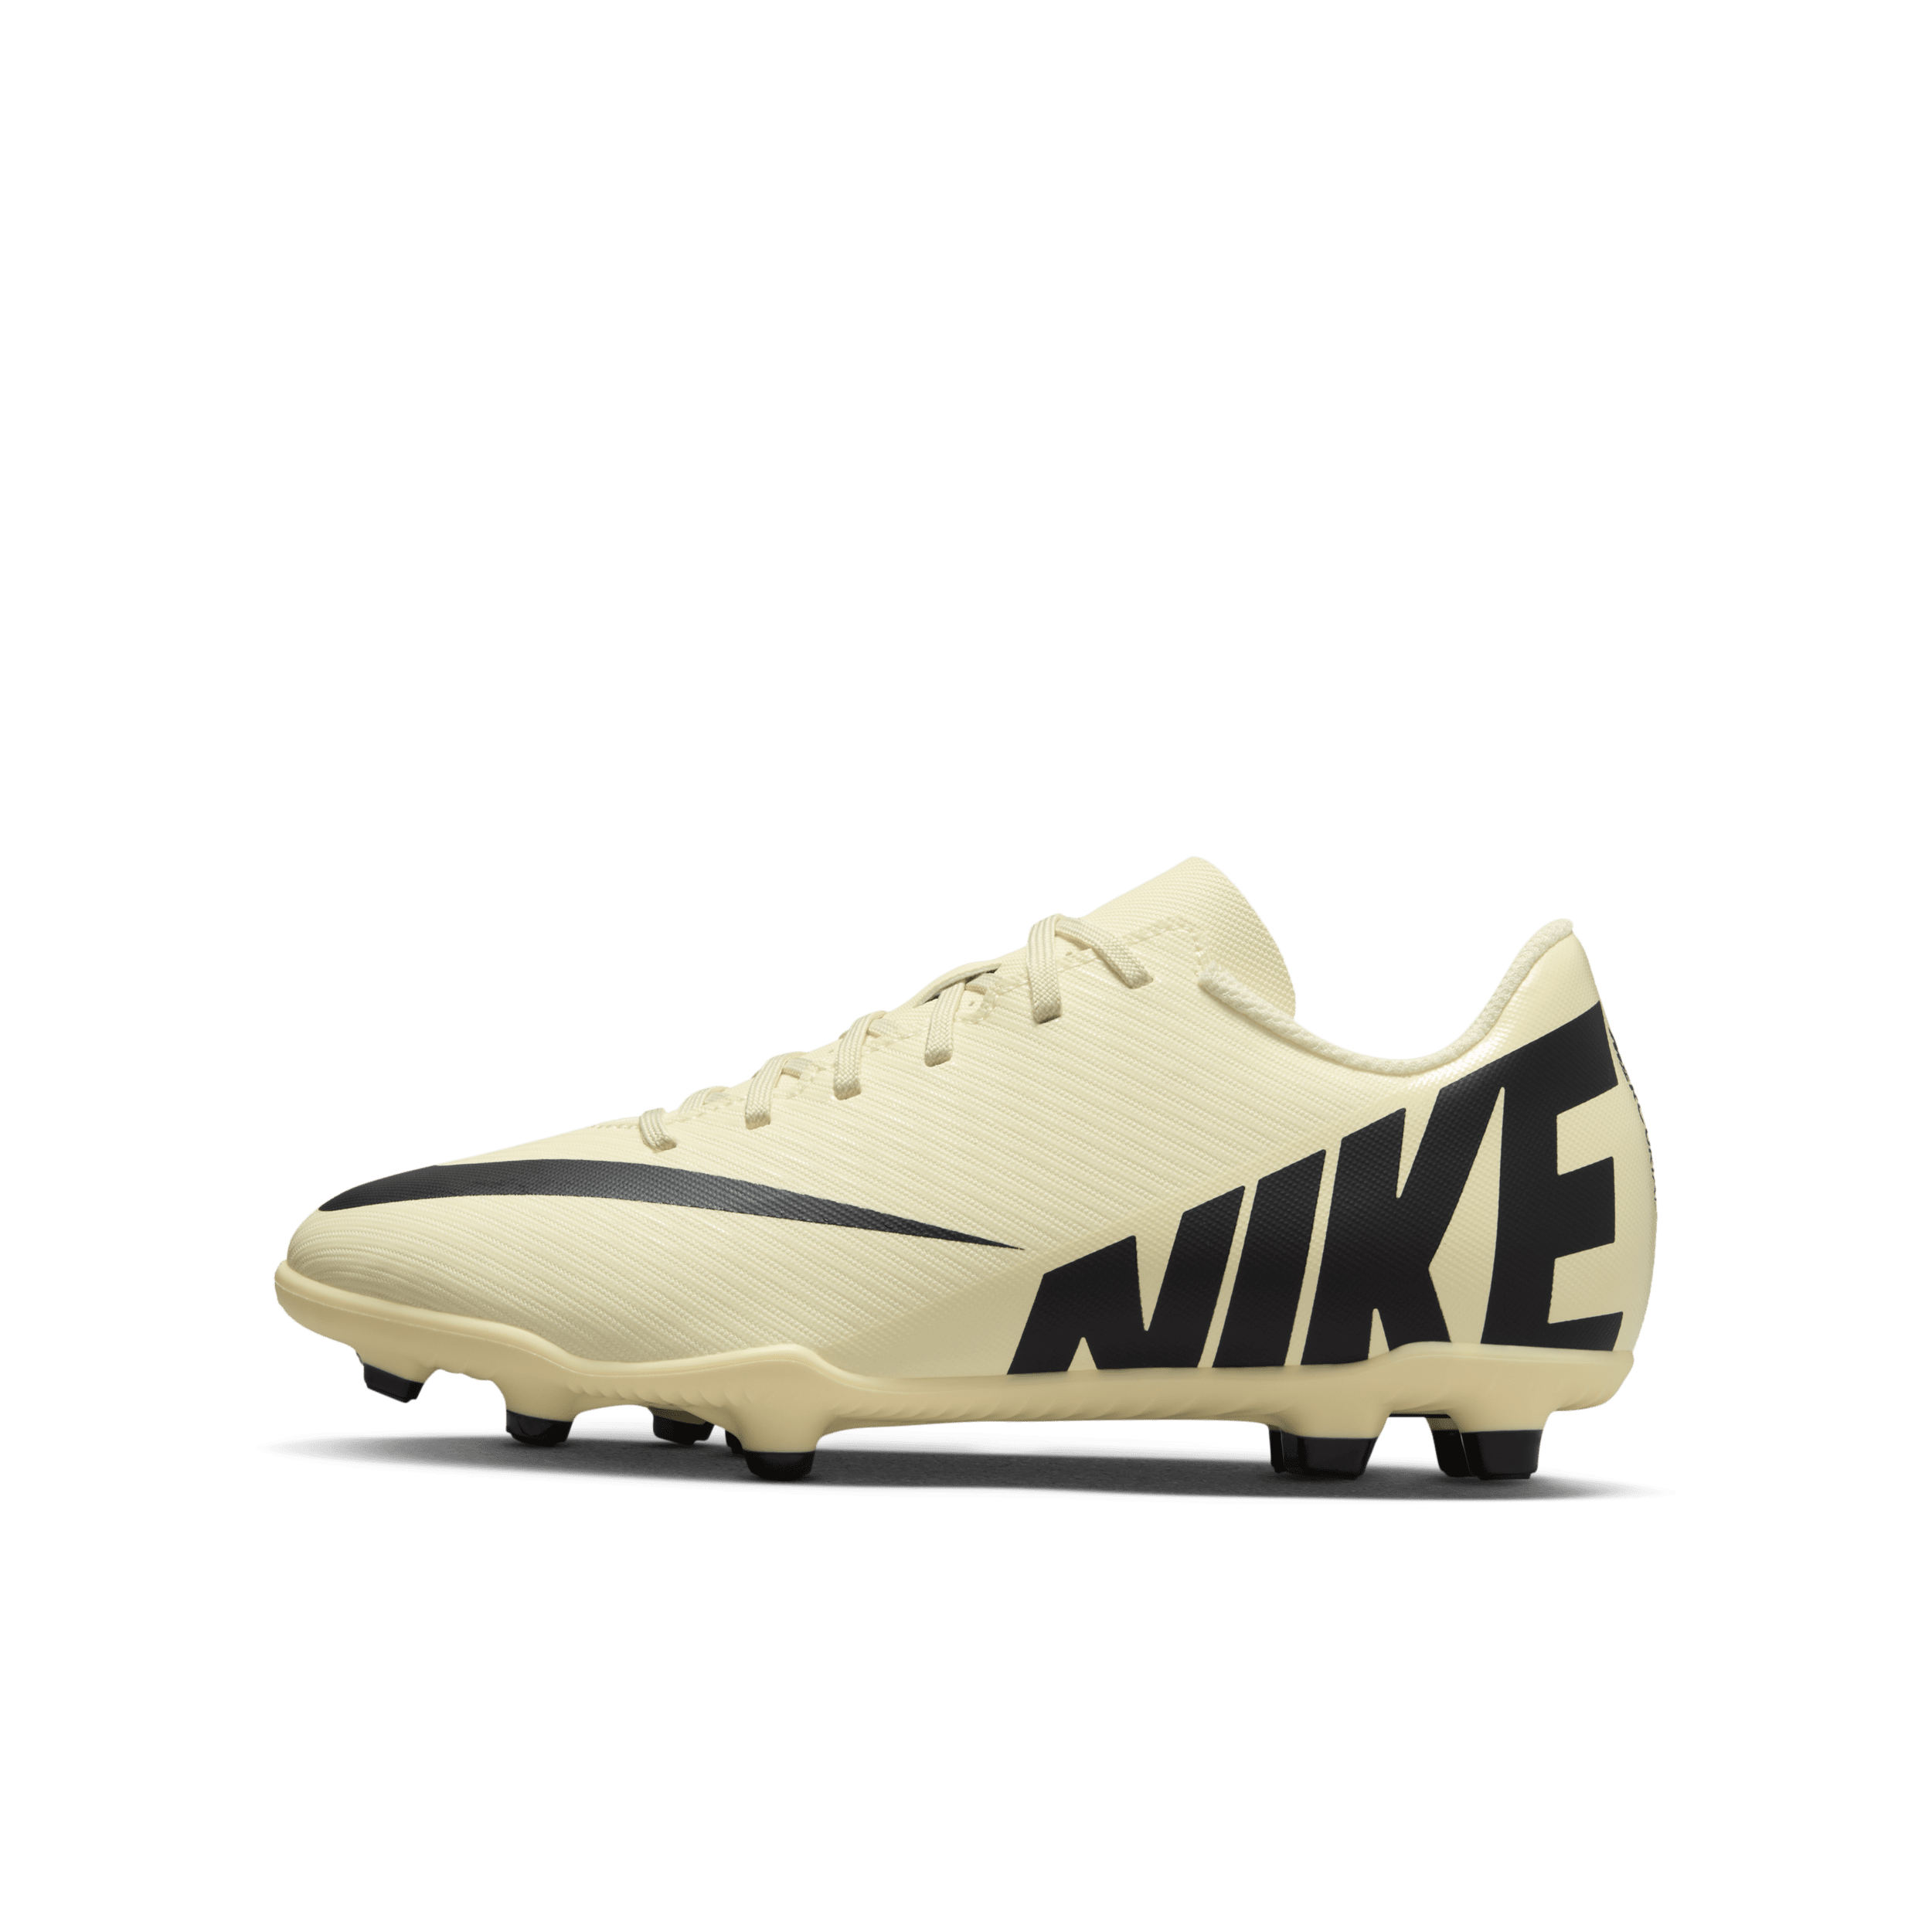 Scarpa da calcio multiterreno a taglio basso Nike Jr. Mercurial Vapor 15 Club – Bambini/Ragazzi - Giallo